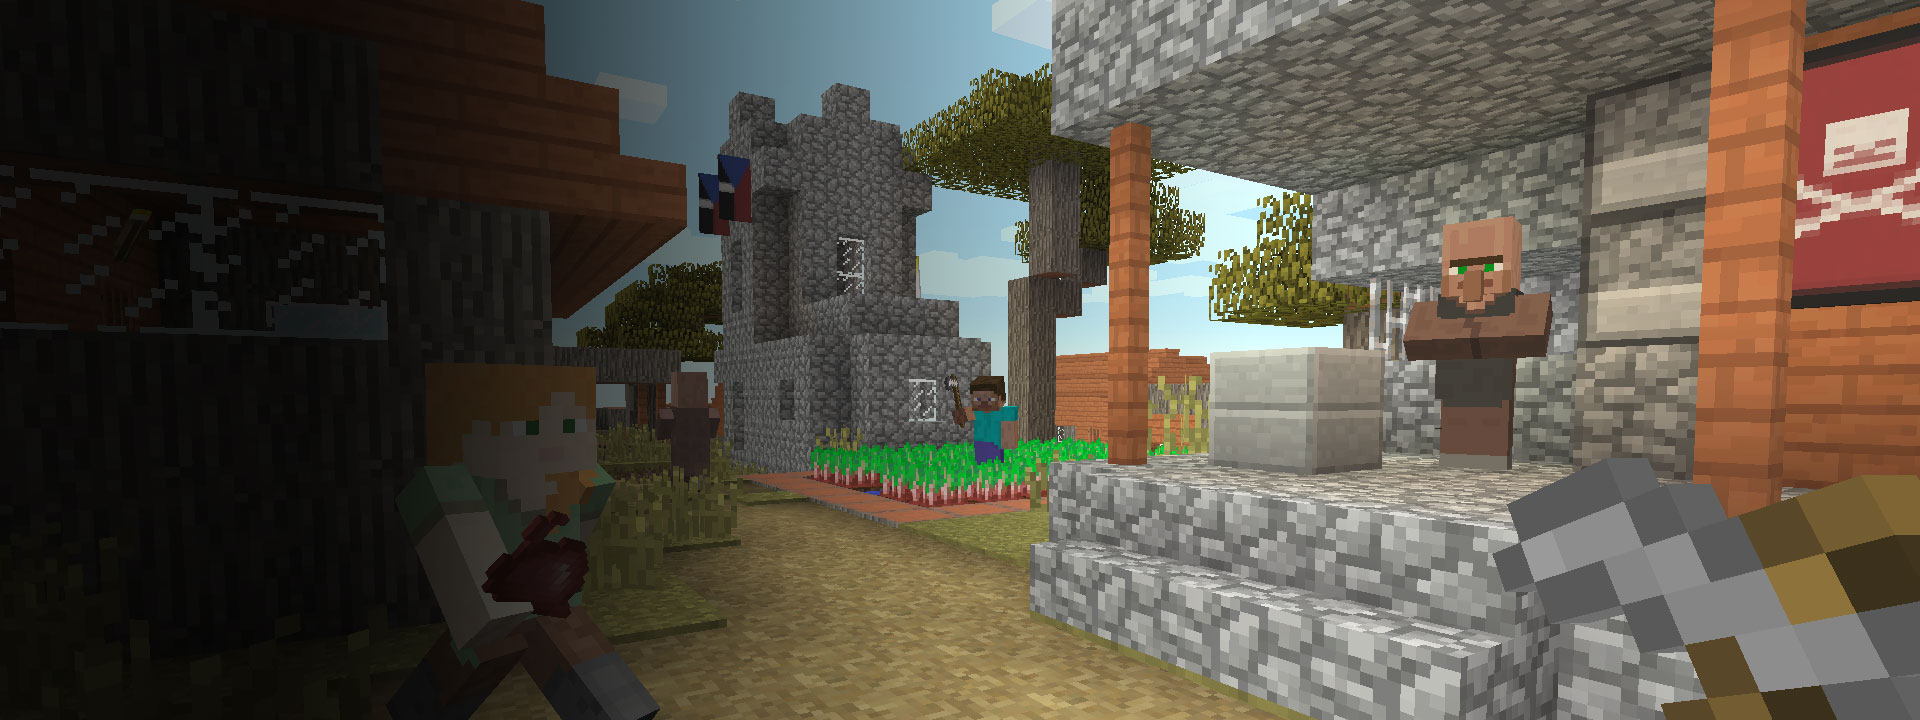 Várias casas e personagens do Minecraft a caminhar em primeiro plano.